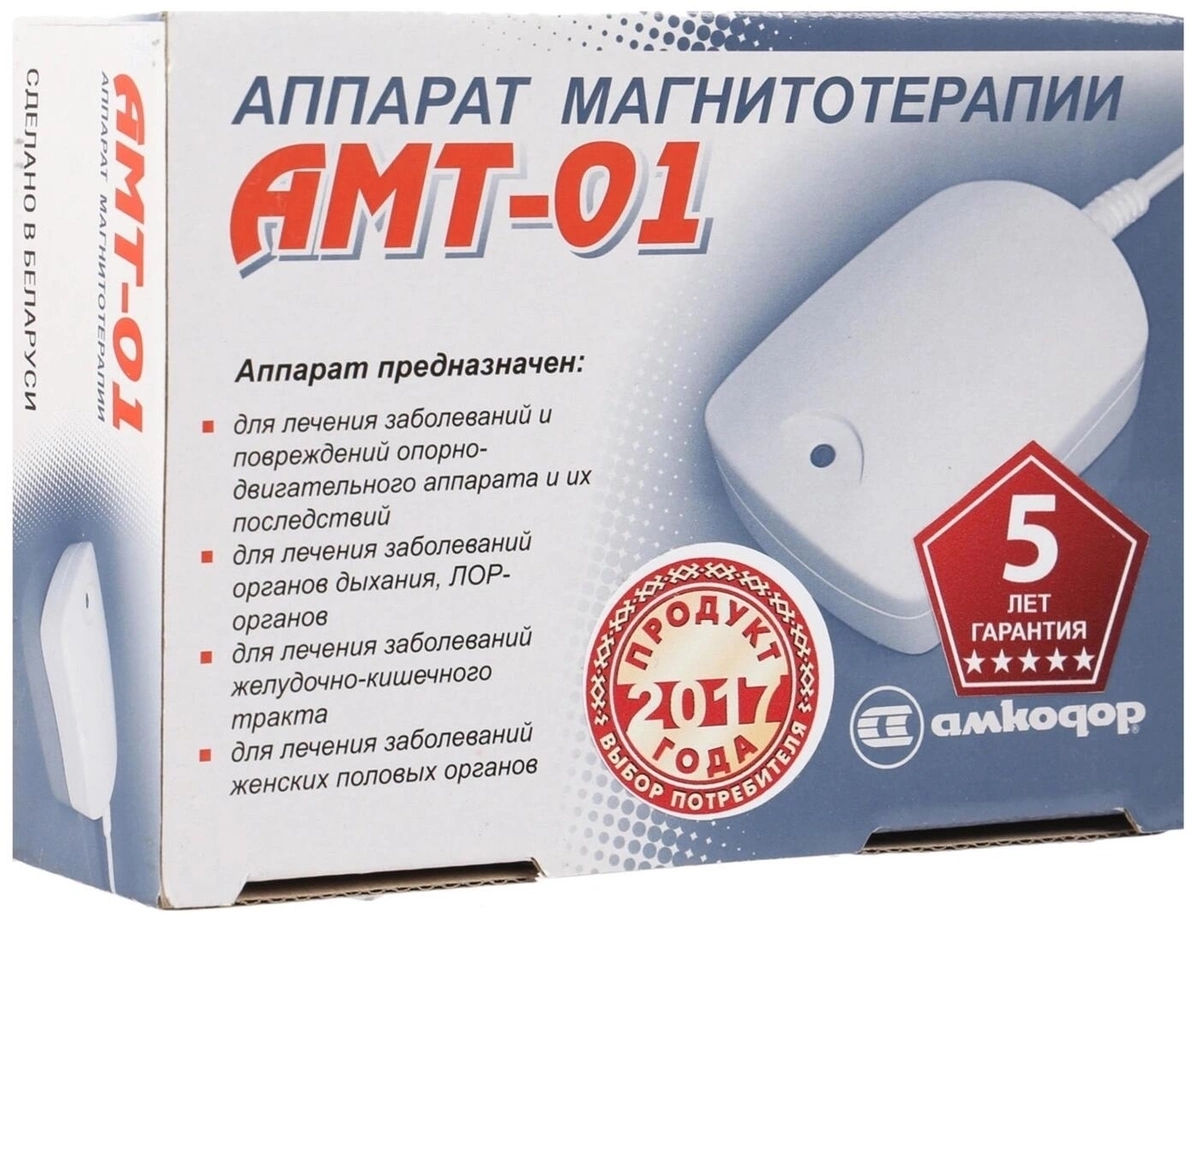 Аппарат для магнитотерапии цена. Аппарат Белвар АМТ-01. Аппарат магнитотерапии АМТ-01. Белвар аппарат магнитной терапии АМТ-01 белый. Медицинские приборы магнитотерапии Белвар АМТ 01.